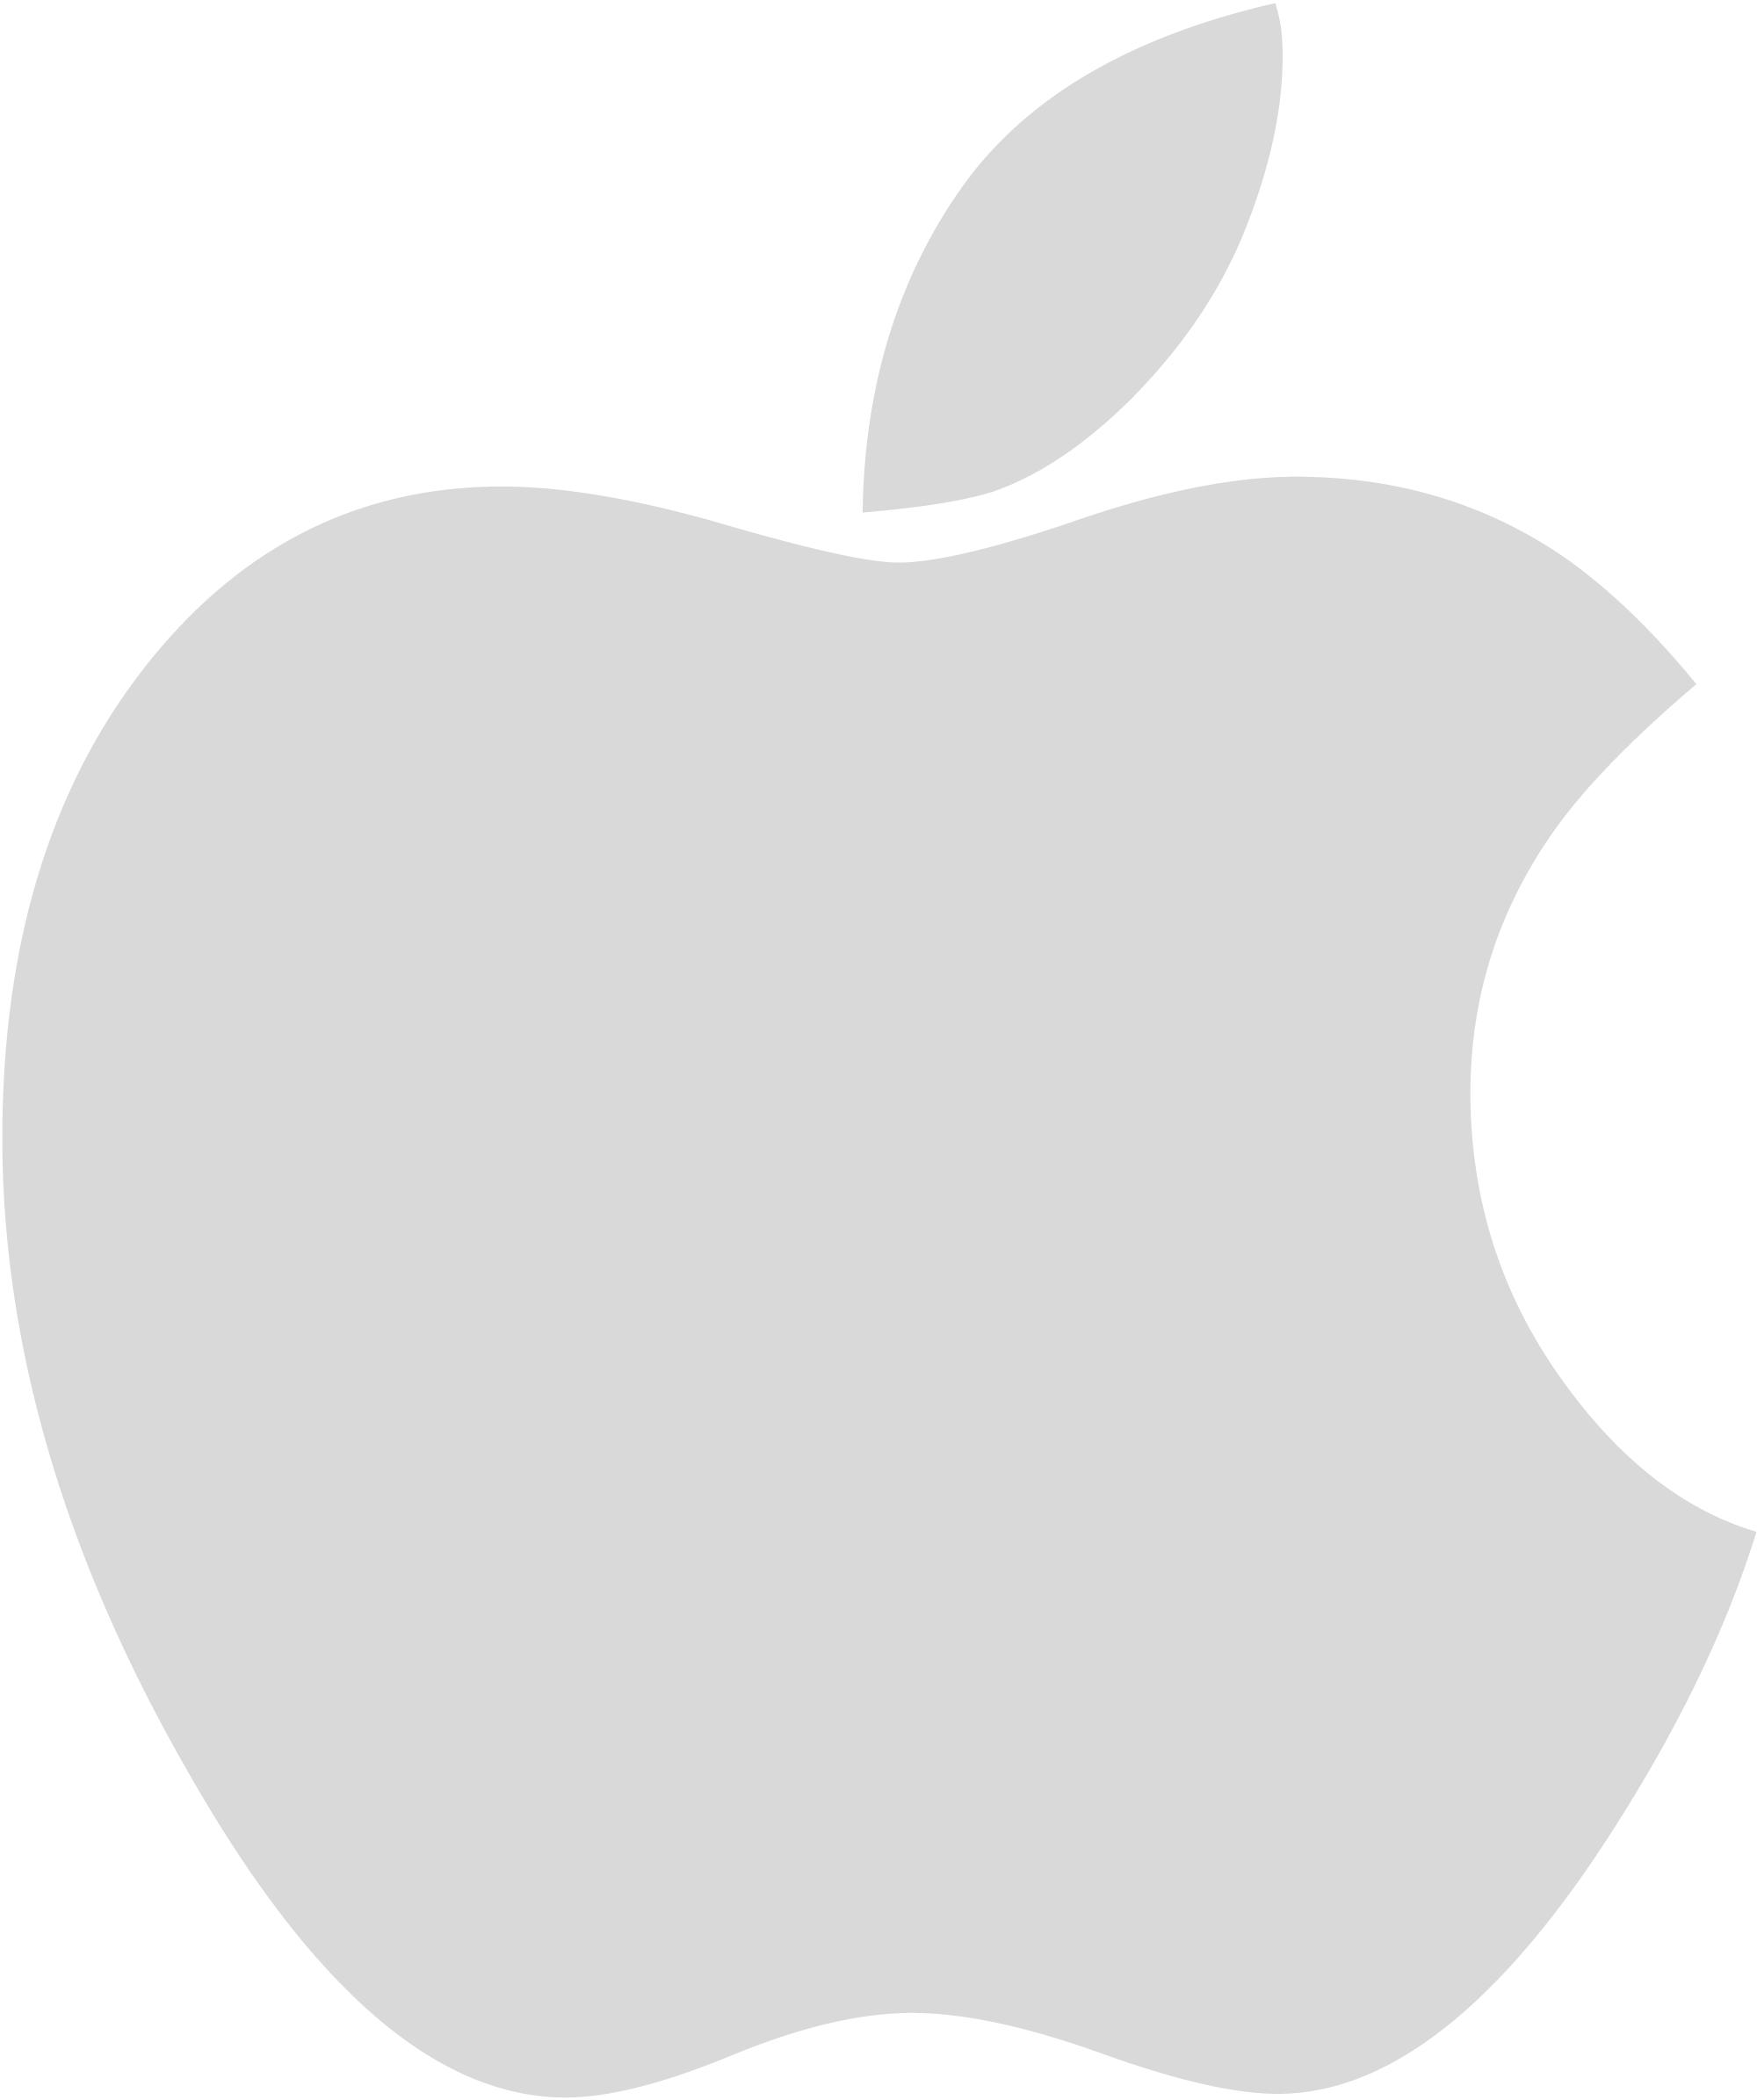 Apple Logo Eps - ClipArt Best